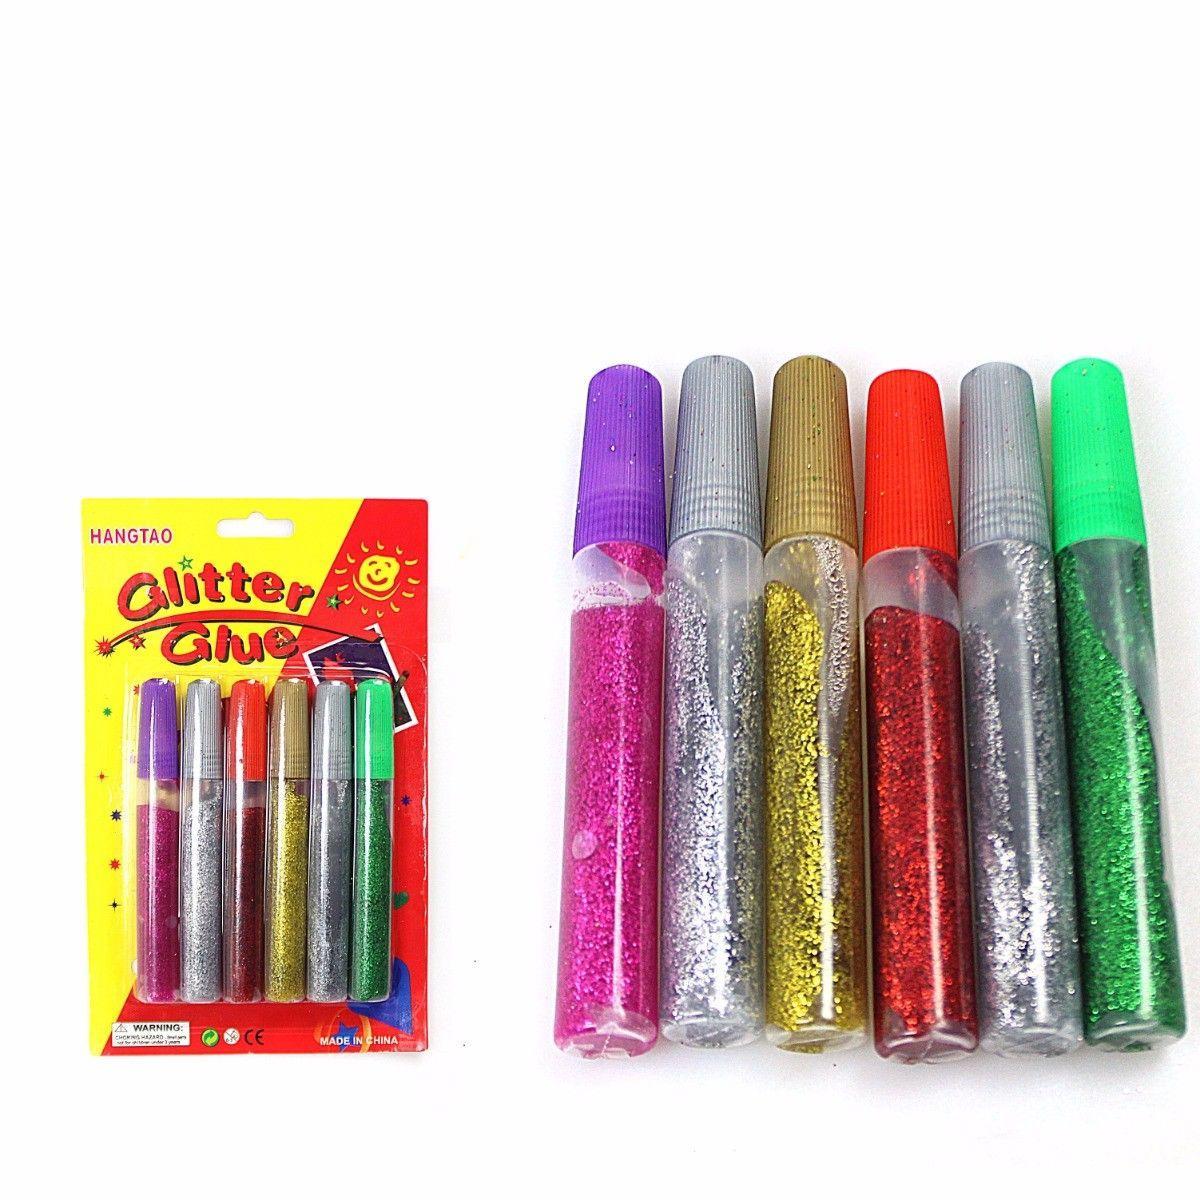 Children Glitter Glue In Assorted Glue 2843 (Large Letter Rate)